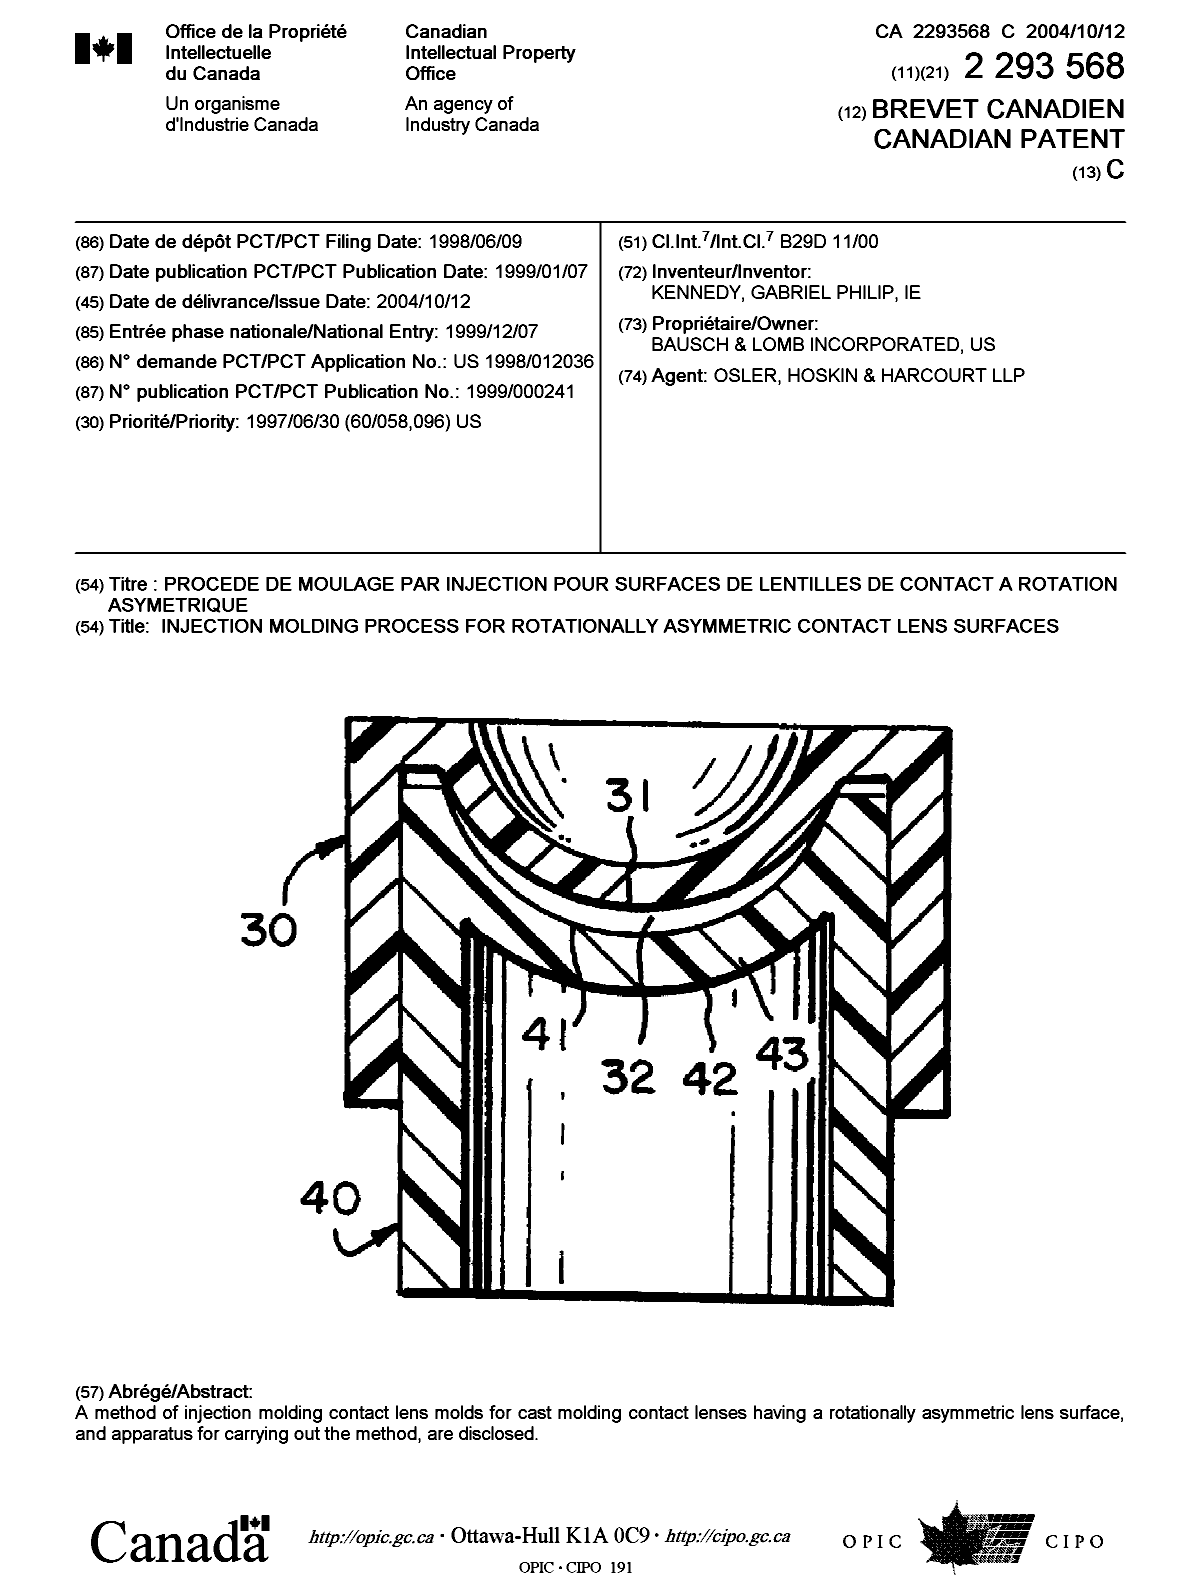 Document de brevet canadien 2293568. Page couverture 20040916. Image 1 de 1